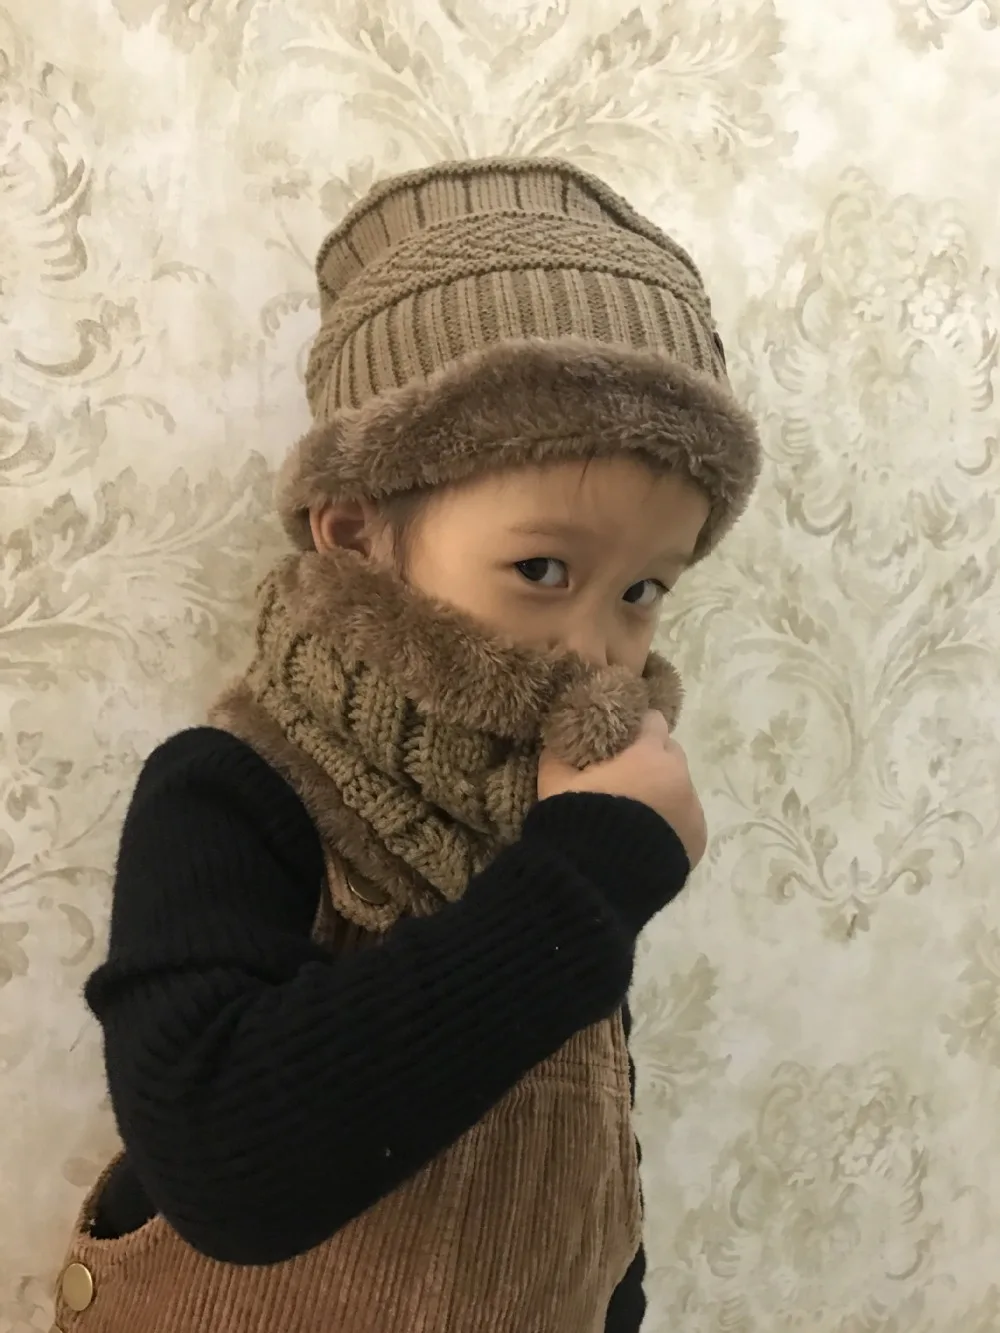 Родитель Ребенок 2 шт. модные зимние шапочки вязаная шапка и шарф для девочек и мальчиков от 3 до 14 лет студентов шапки